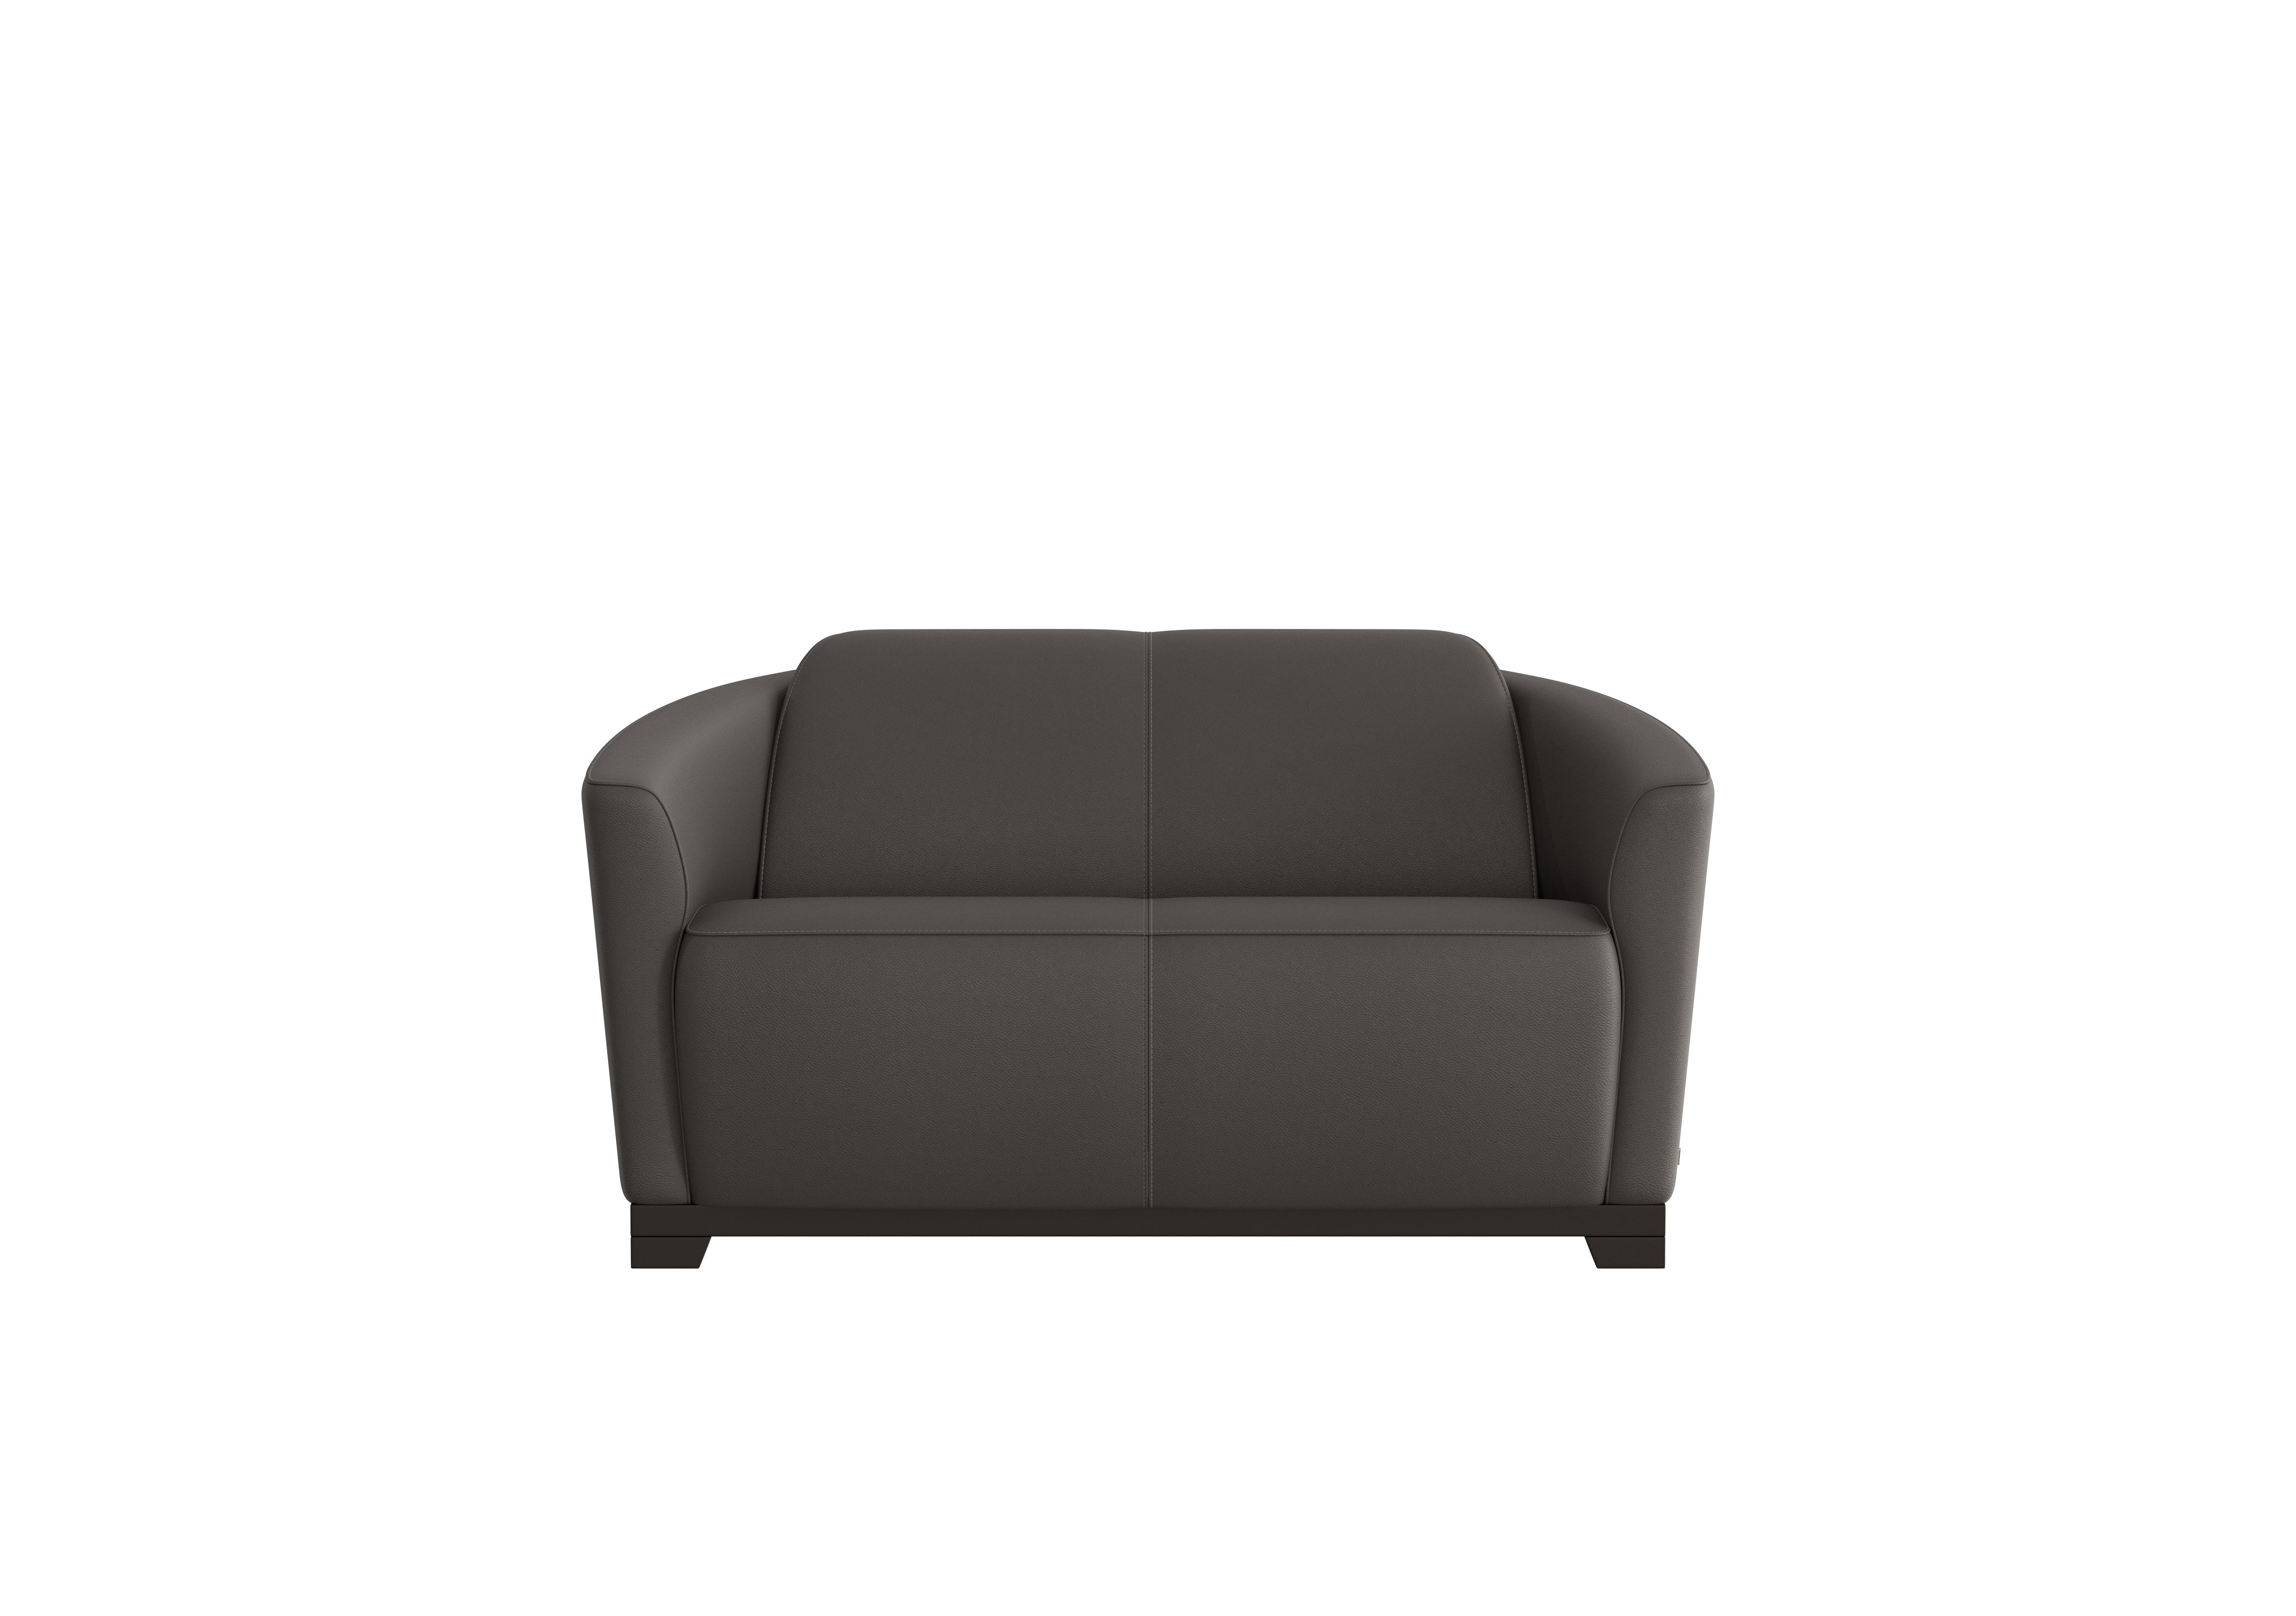 Ketty 2 Seater Leather Sofa in Torello Grigio Scuro 327 on Furniture Village